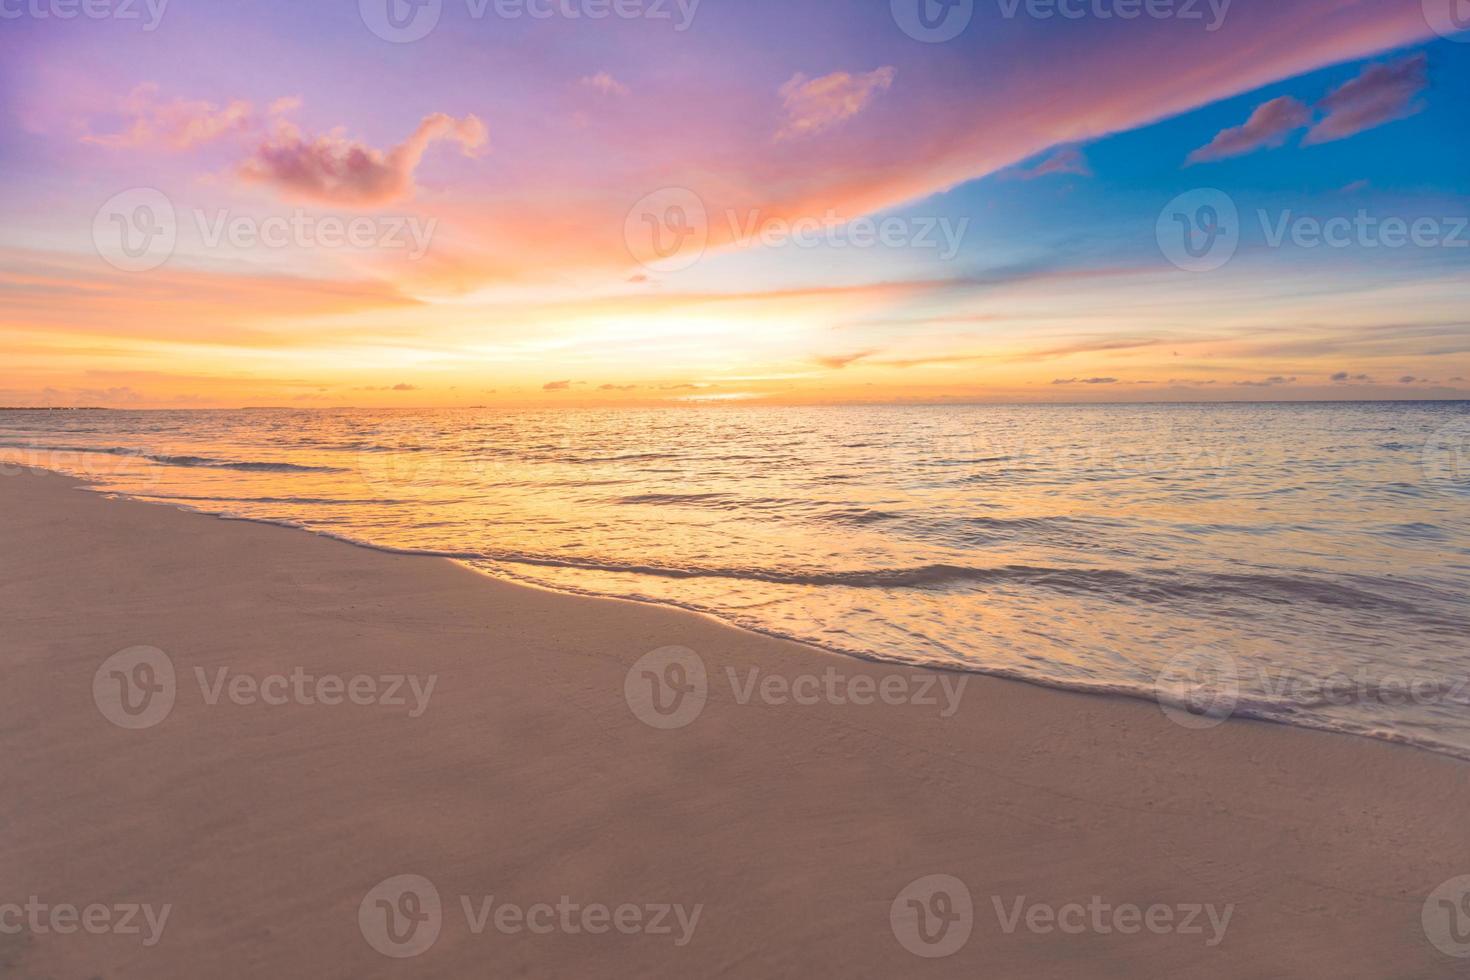 majestueus detailopname visie van kalmte zee water golven met oranje zonsopkomst zonsondergang zonlicht. tropisch eiland strand landschap, exotisch kust kust. zomer vakantie, vakantie verbazingwekkend natuur toneel. kom tot rust paradijs foto